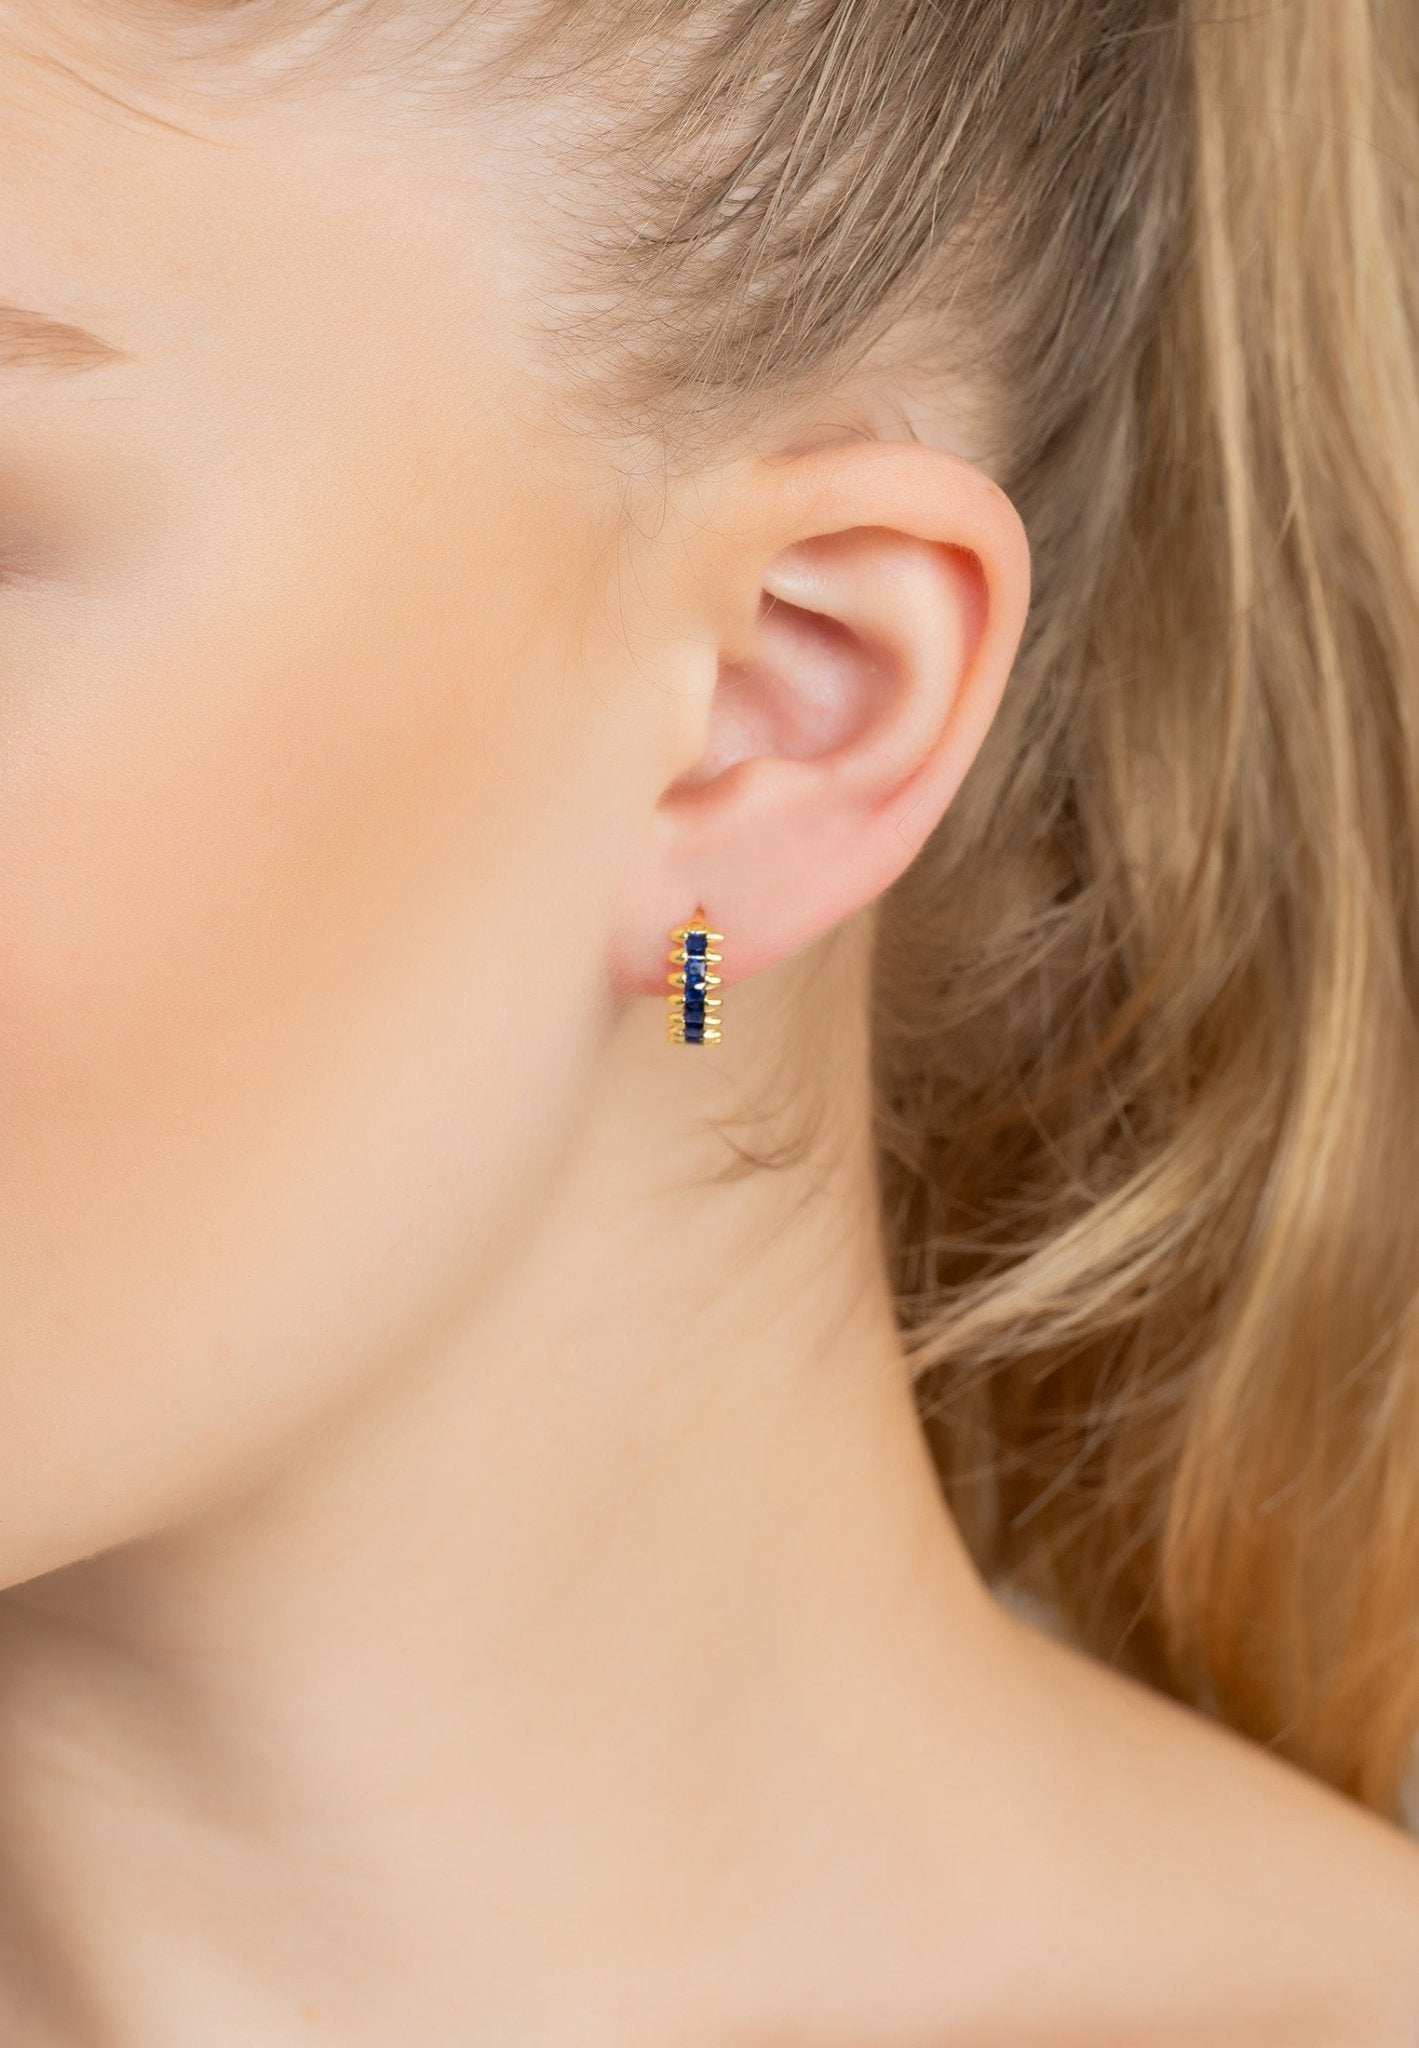 Huggie Hoop Earrings Sapphire Gold - LATELITA Earrings